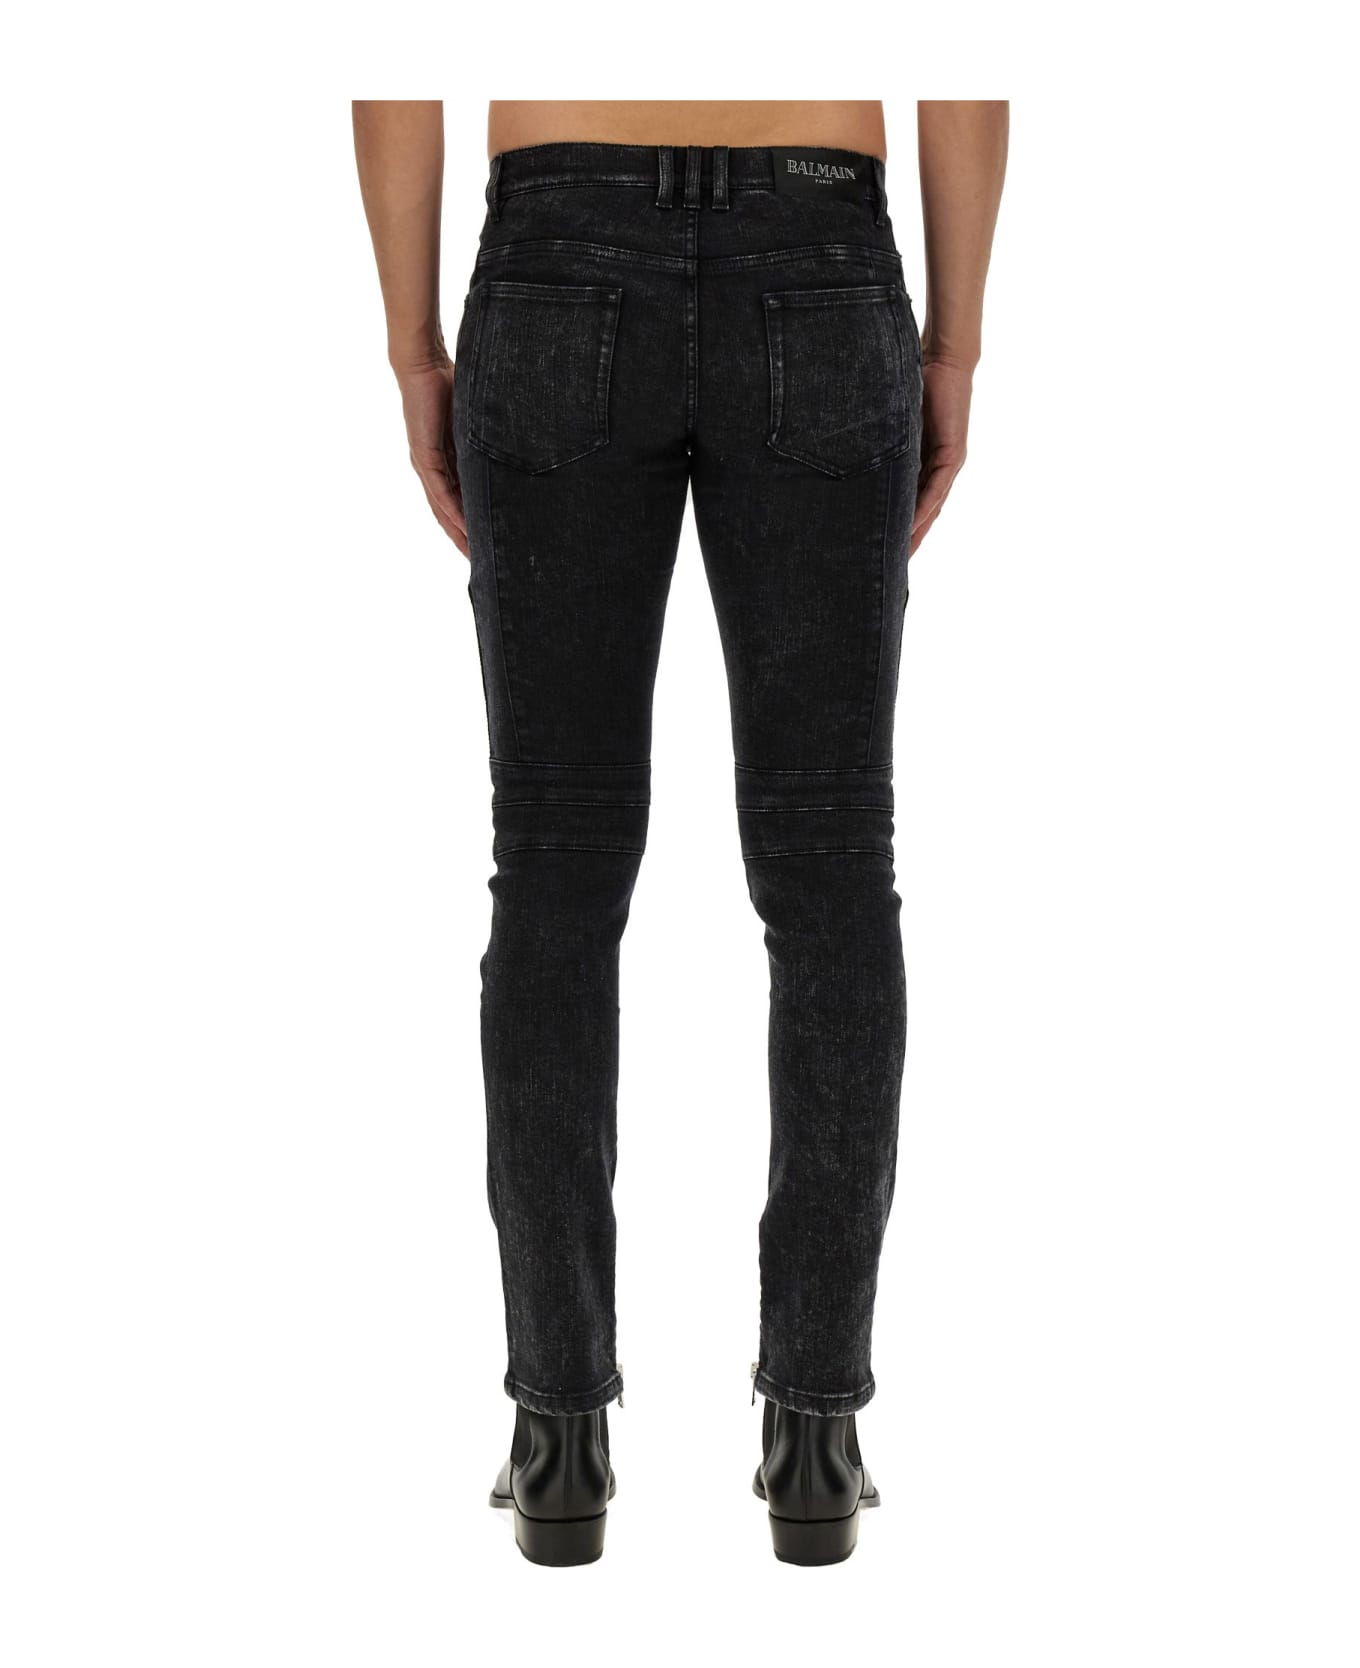 Balmain Slim Fit Jeans - NERO